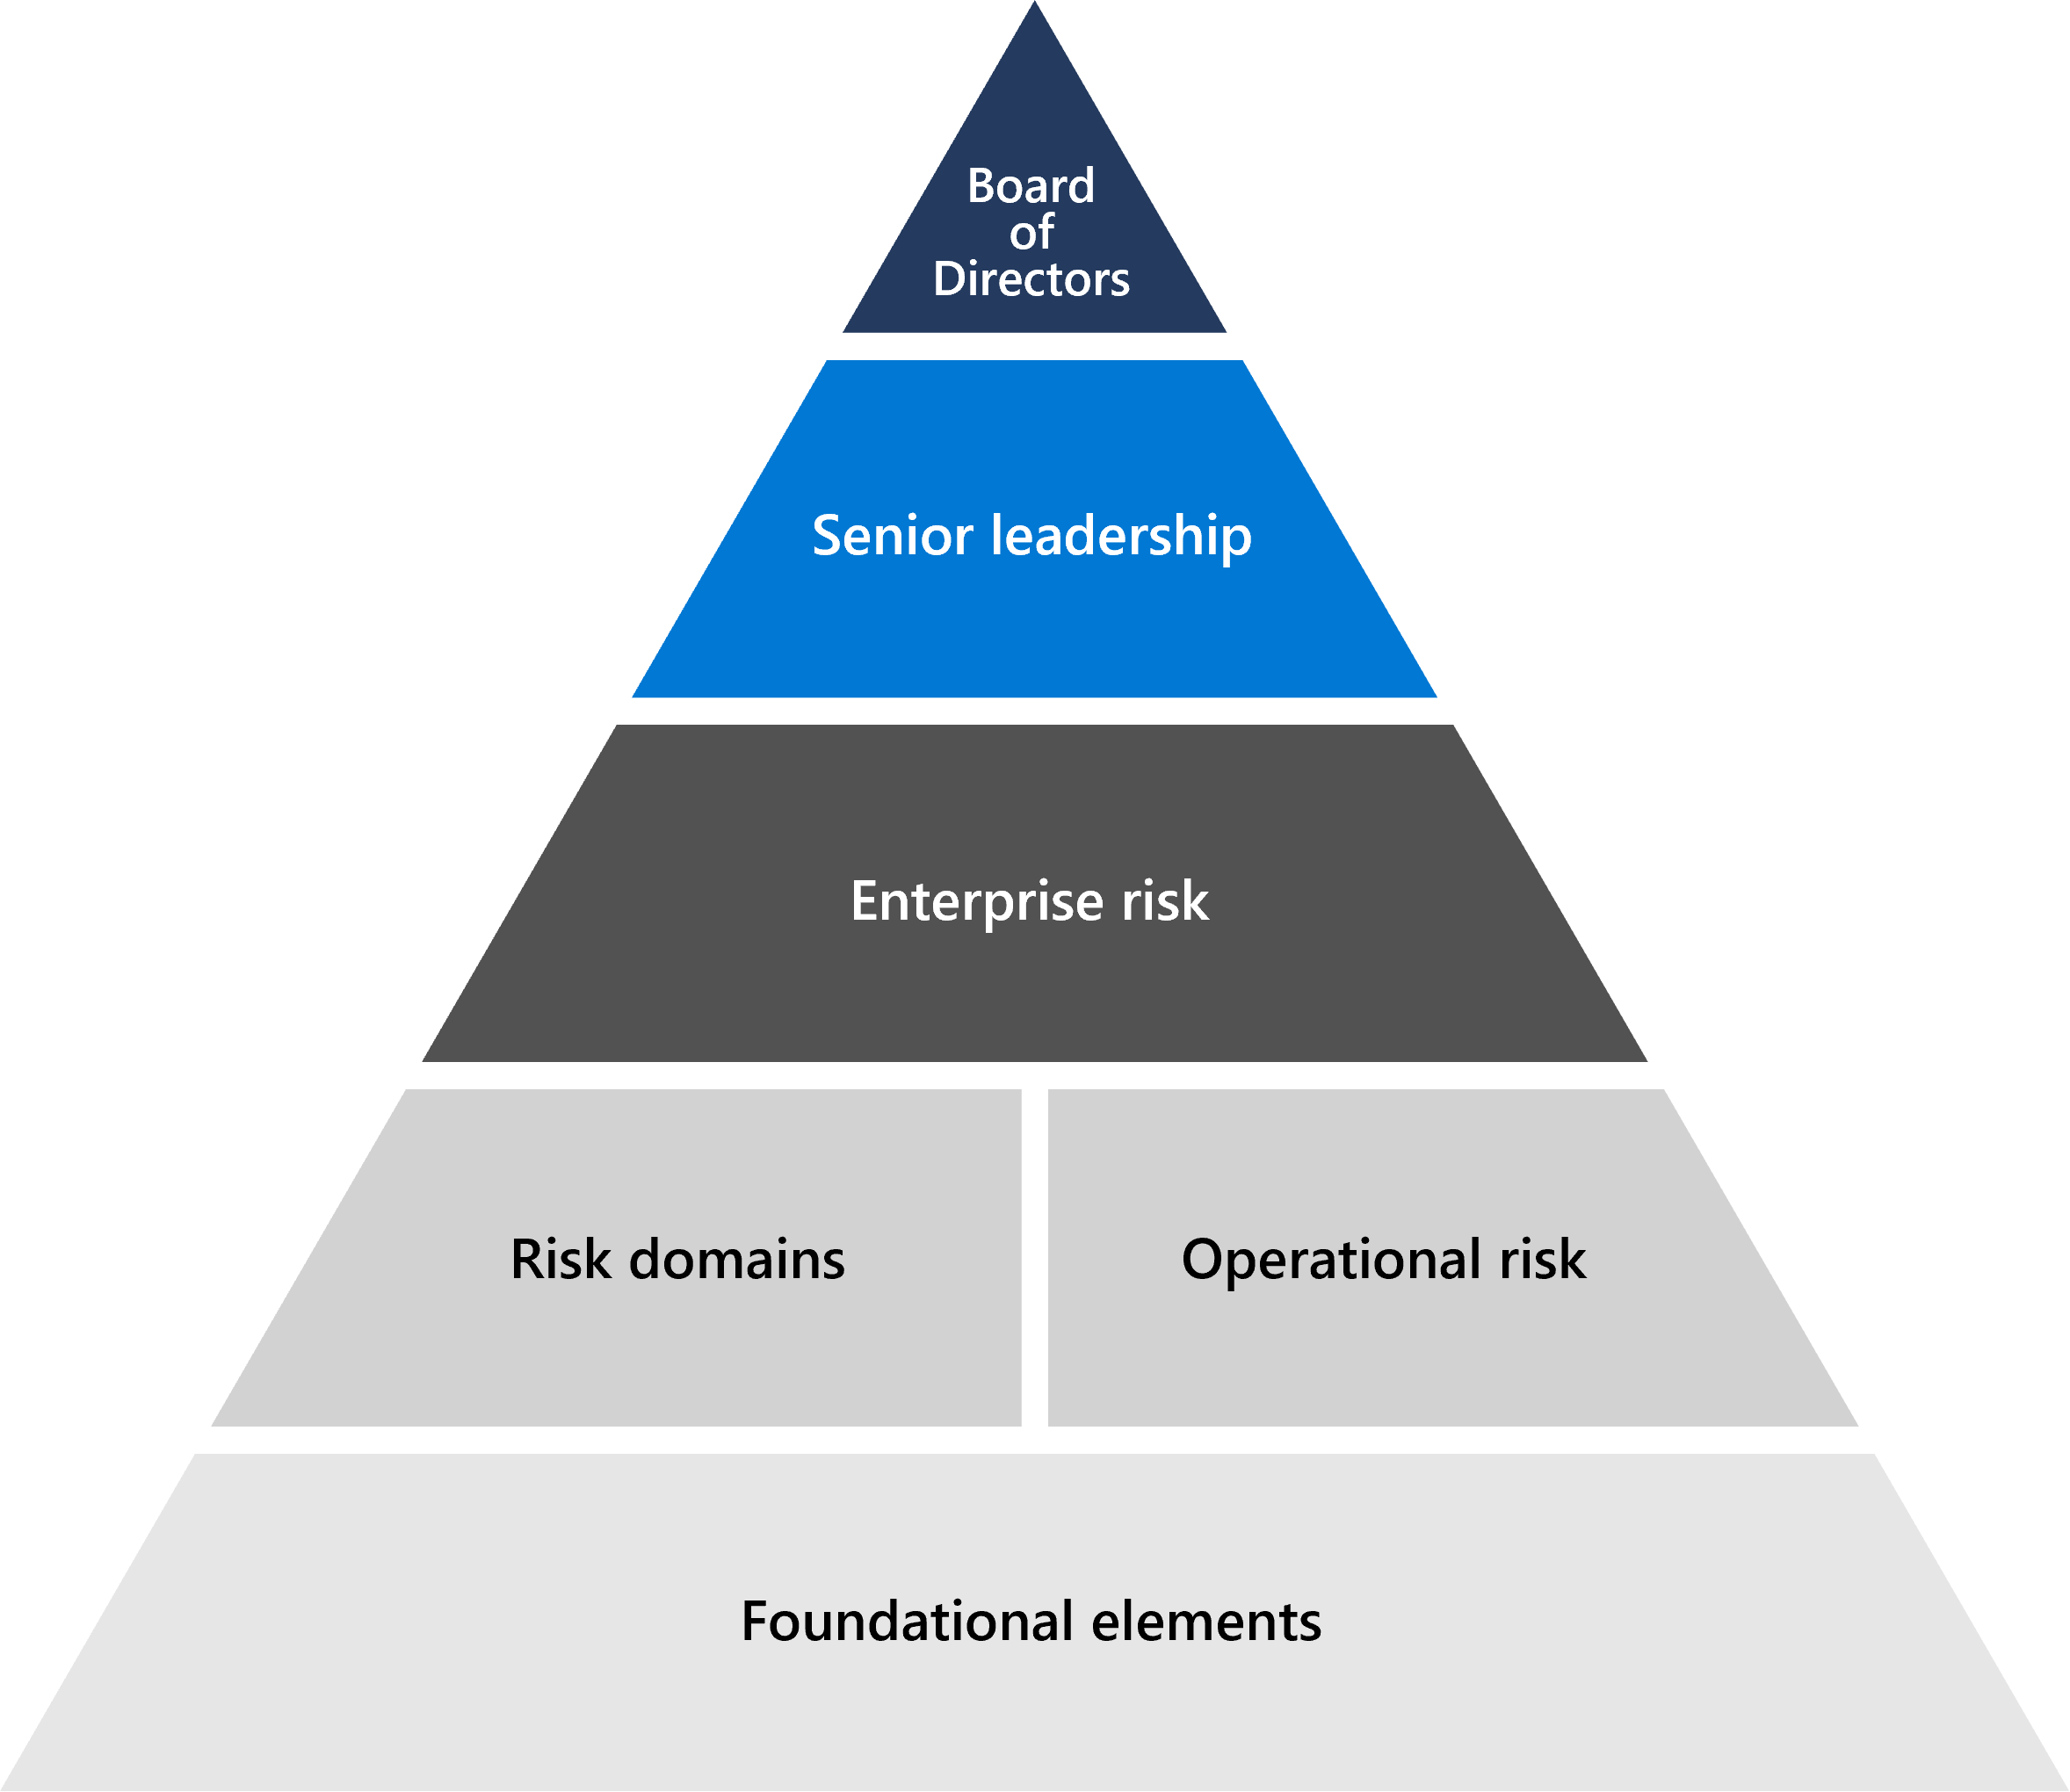 Diagrama piramidal que muestra la base de Microsoft Risk Managemen, desde la parte superior, empezando por el consejo de directores, el liderazgo sénior y el riesgo empresarial. La línea siguiente es dominios de riesgo y dominios operativos y la parte inferior del triángulo son elementos fundamentales que constan de sistemas de escucha, metodología y herramientas